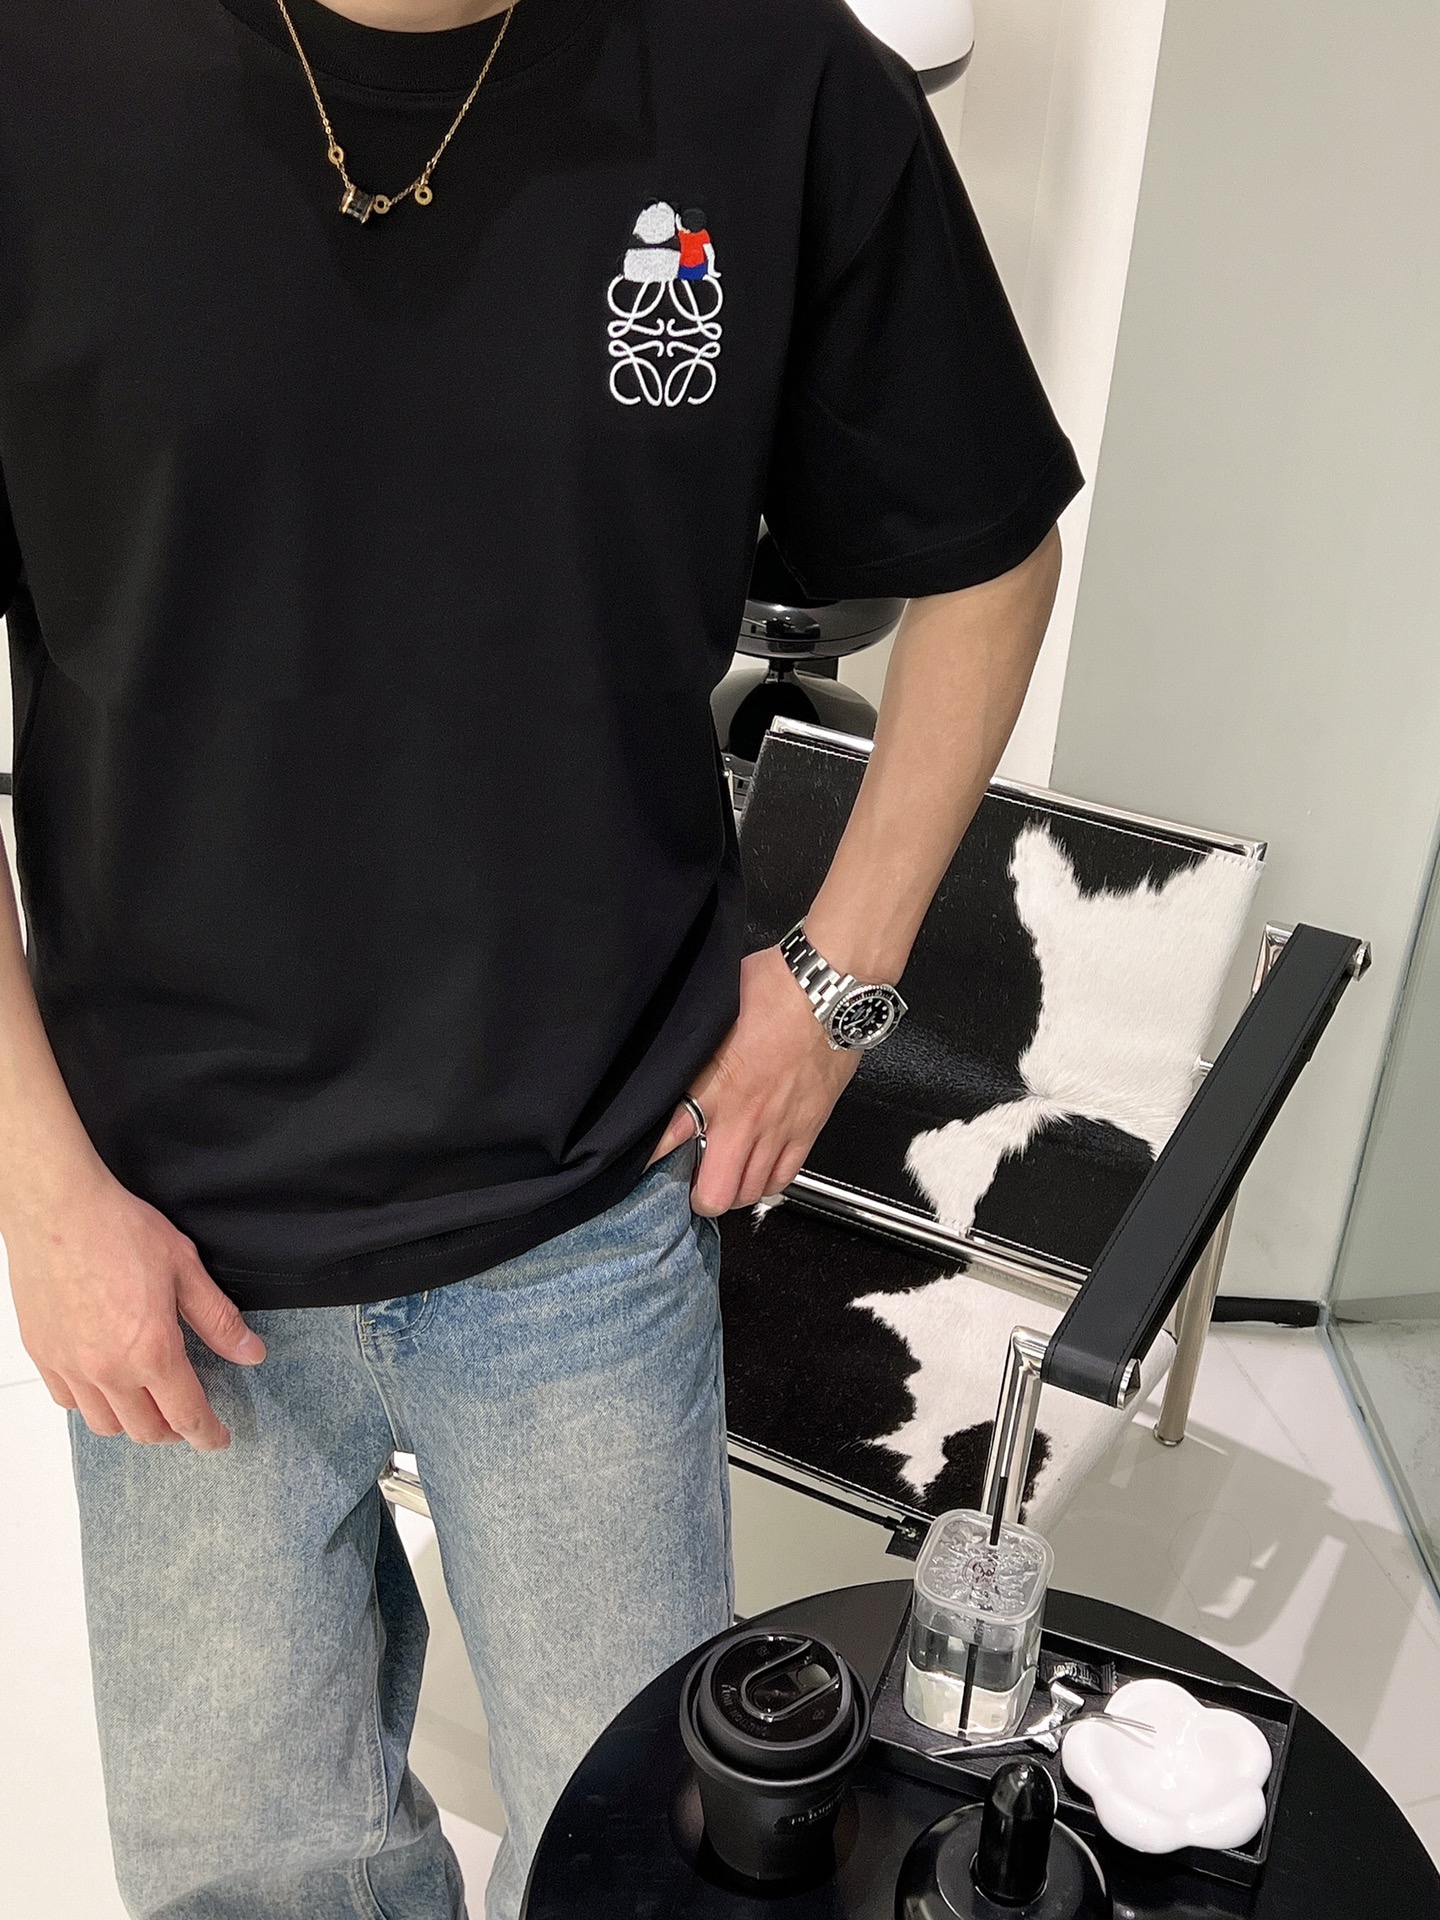 罗意威/春夏新款熊猫人物标识刺绣logo简约丝光棉圆领短袖T恤男女款这款T恤采用了经典的圆领设计搭配上柔